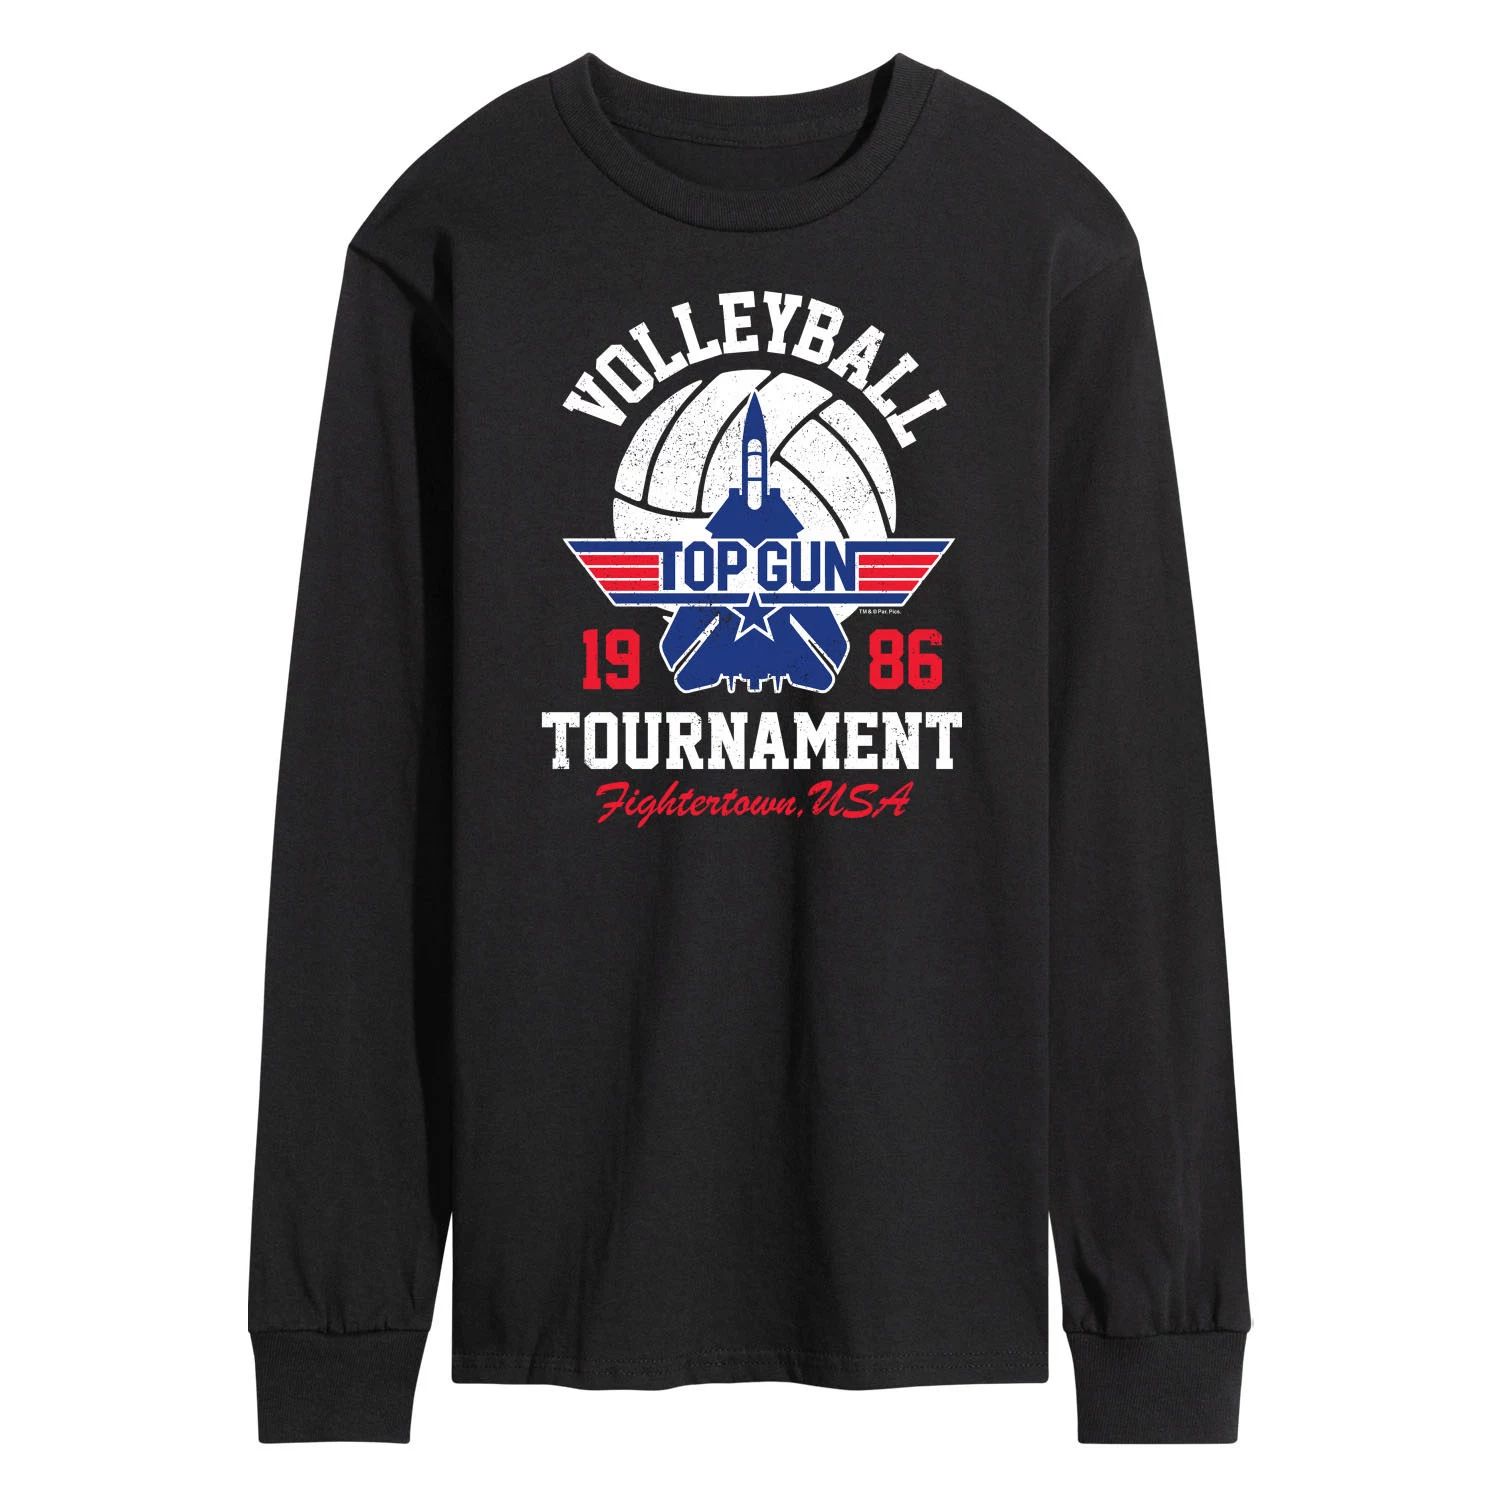 god family gun Мужская футболка Top Gun Volleyball Tournament с длинными рукавами Licensed Character